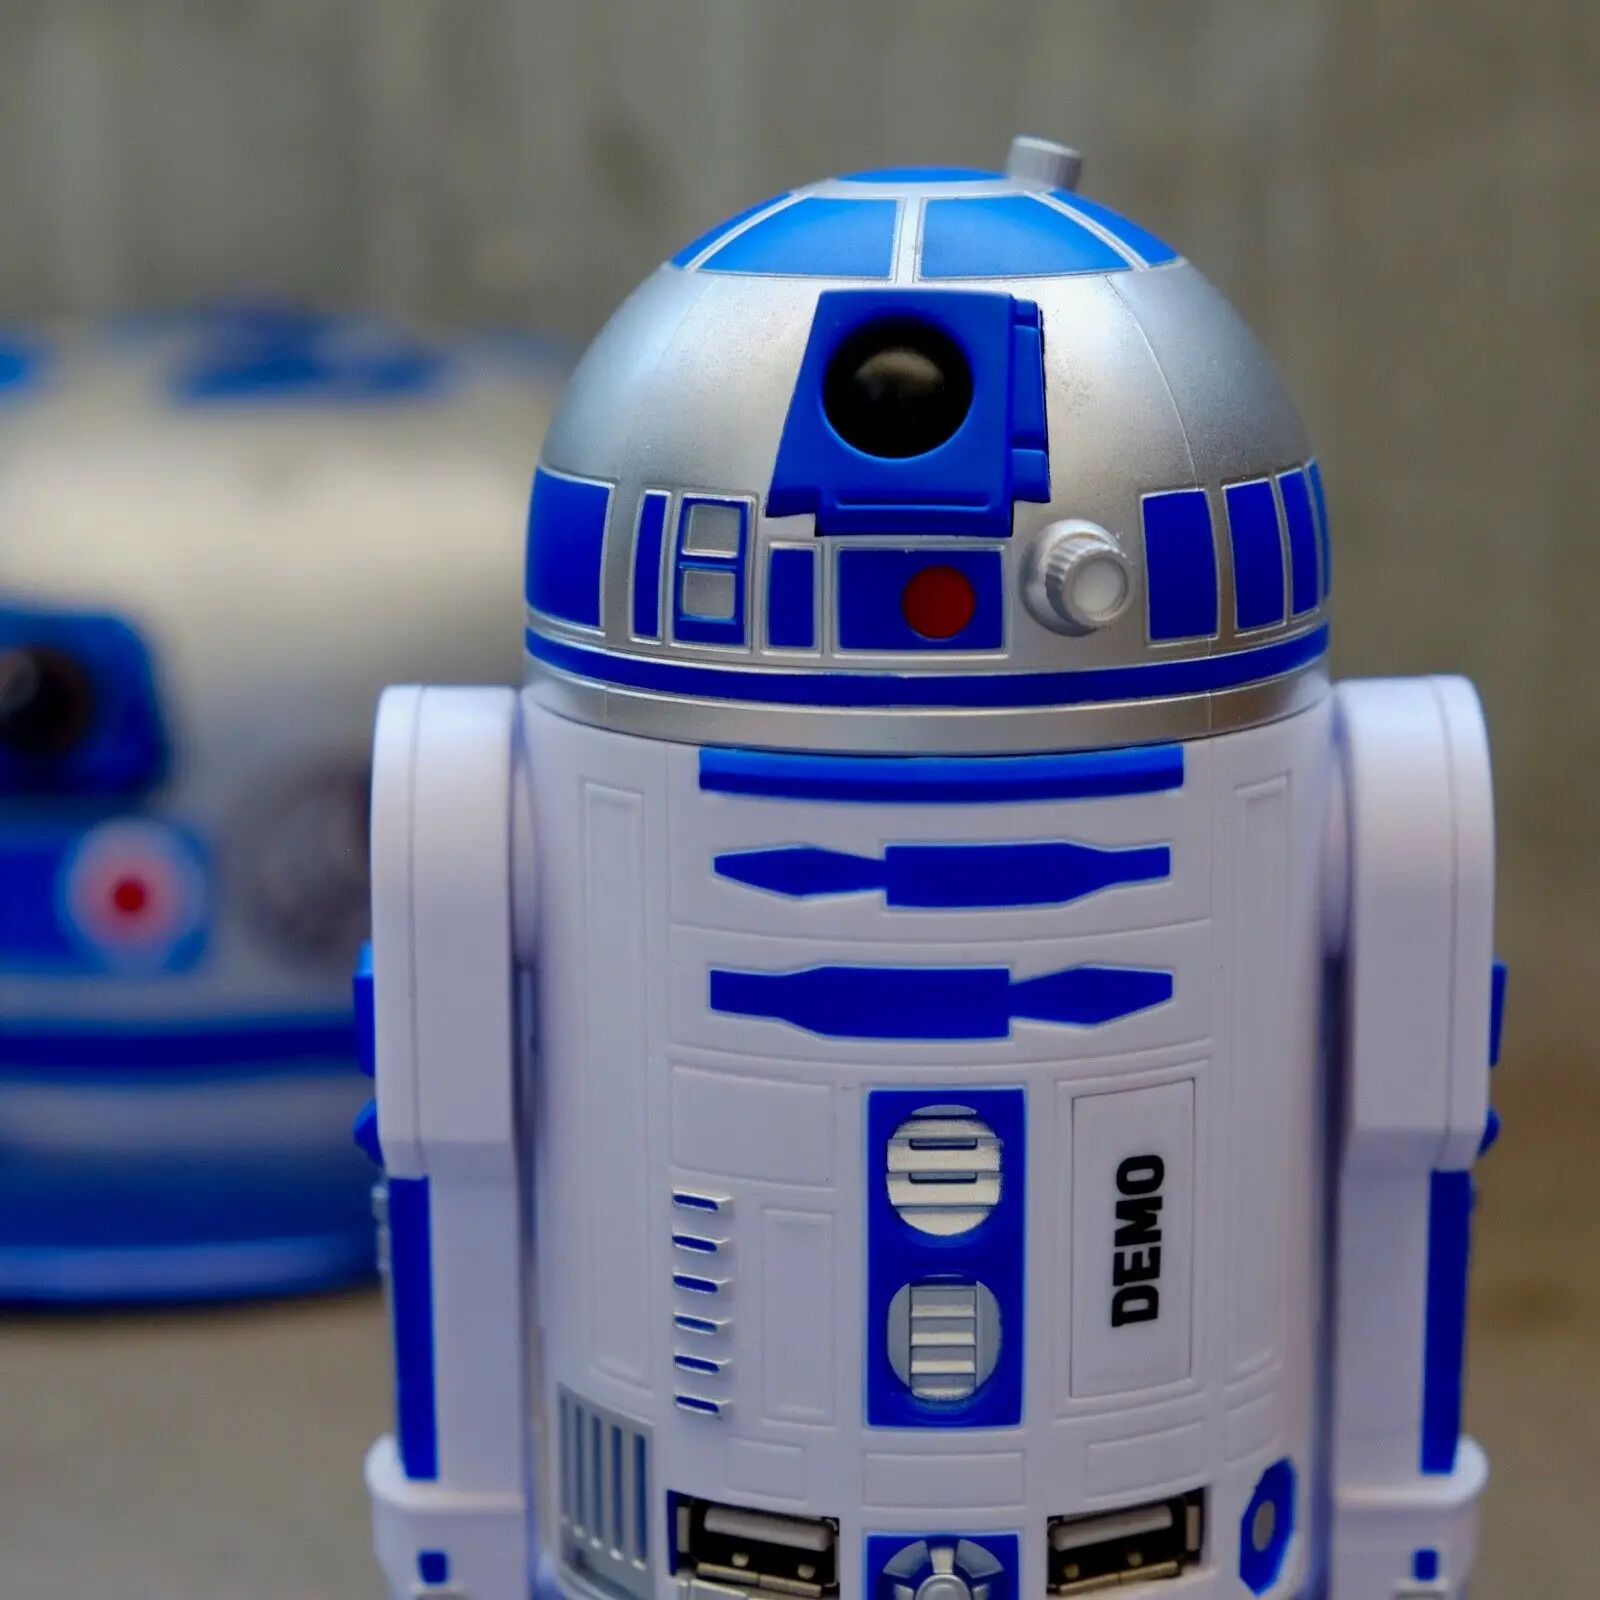 

Звездные войны R2-D2 usb-хаб | 4 USB-порта со звуком | R2D2 герой